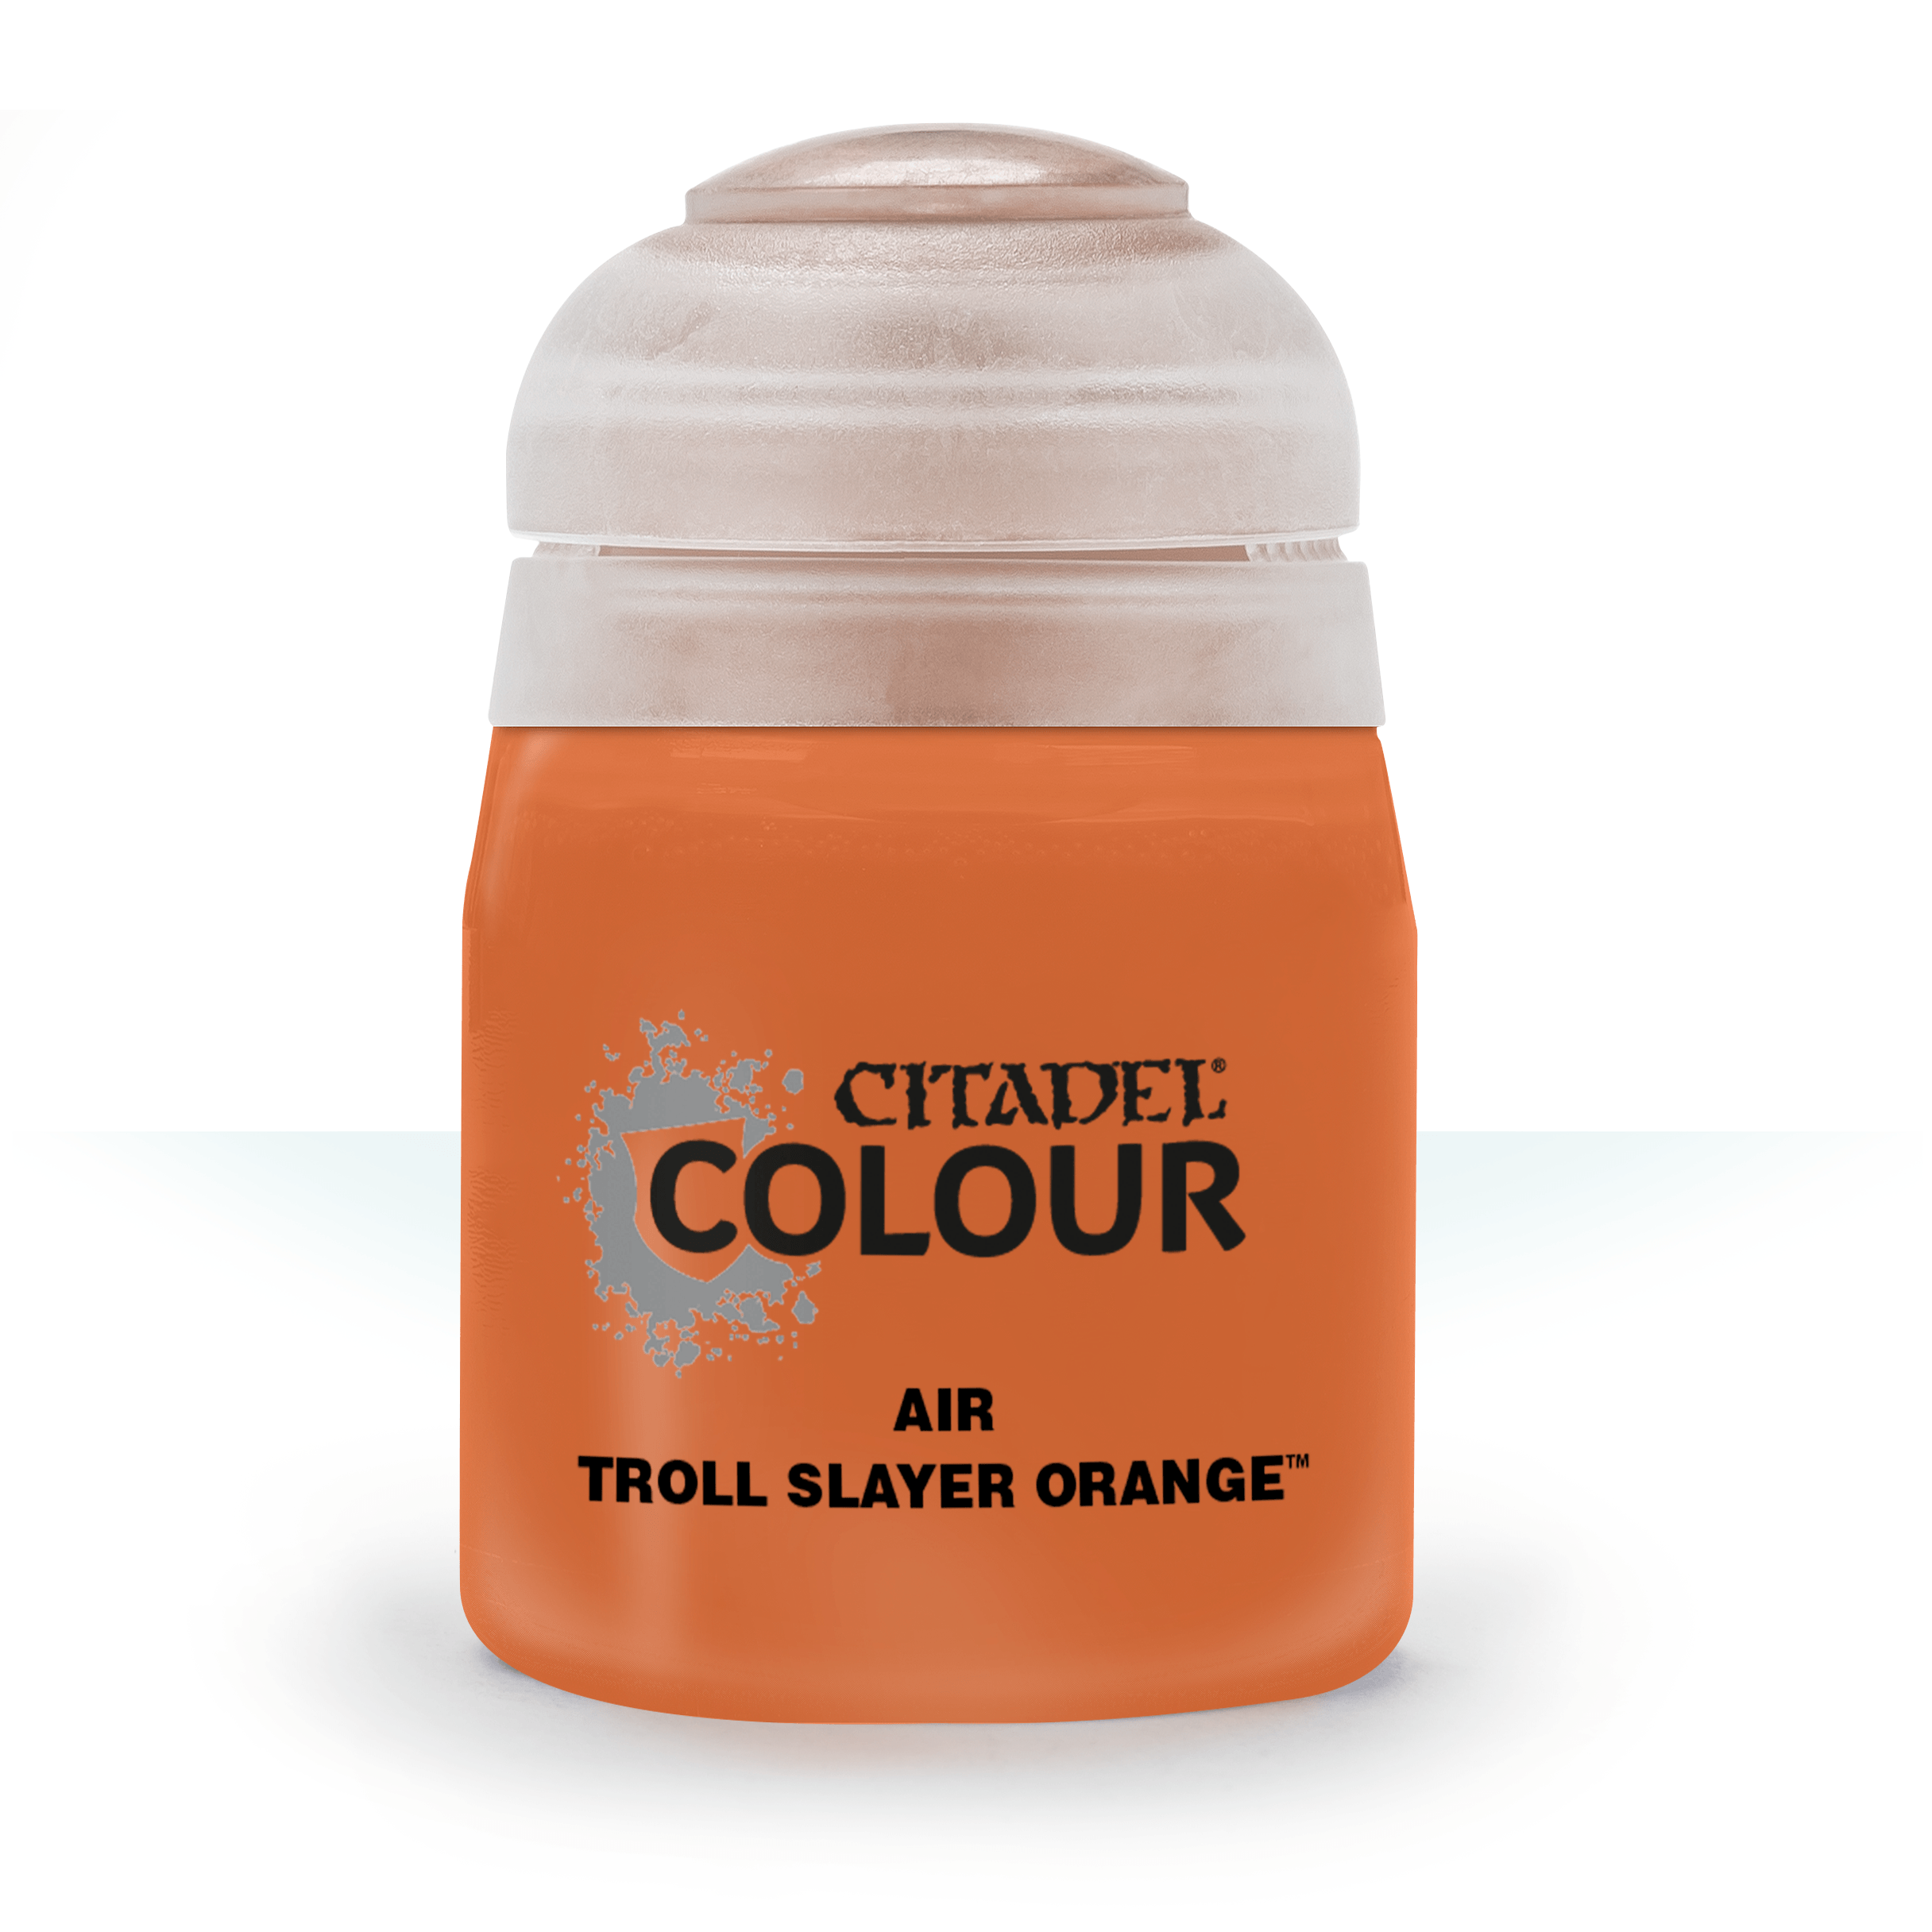 Air Troll Slayer Orange - Citadel Colour - 24 ml